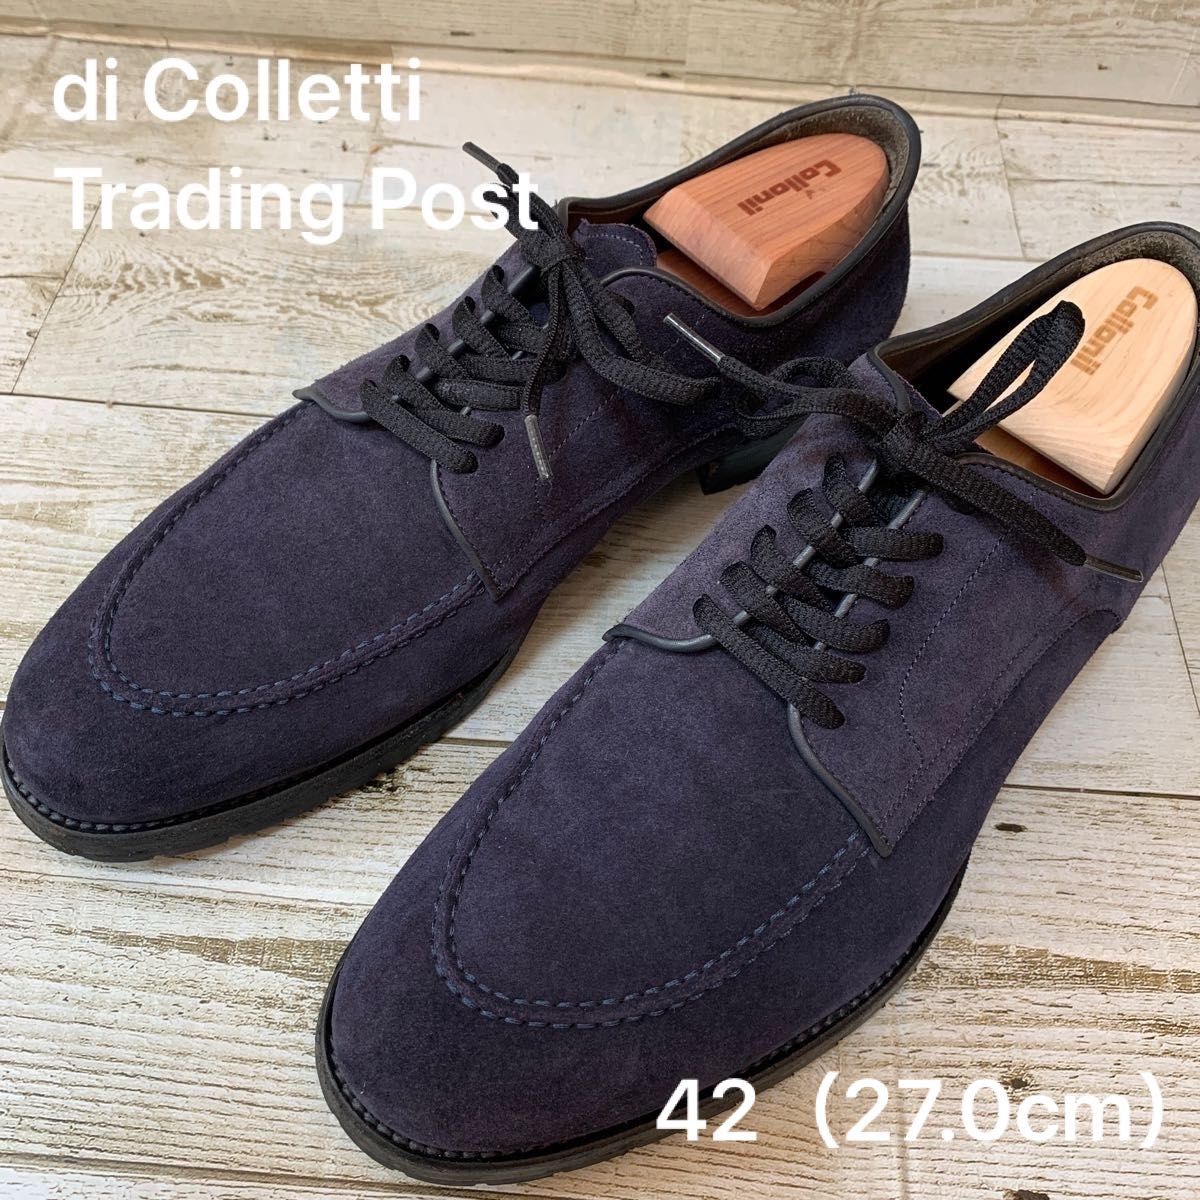 di Colletti（ディコレッティ）Trading Post（トレーディングポスト 